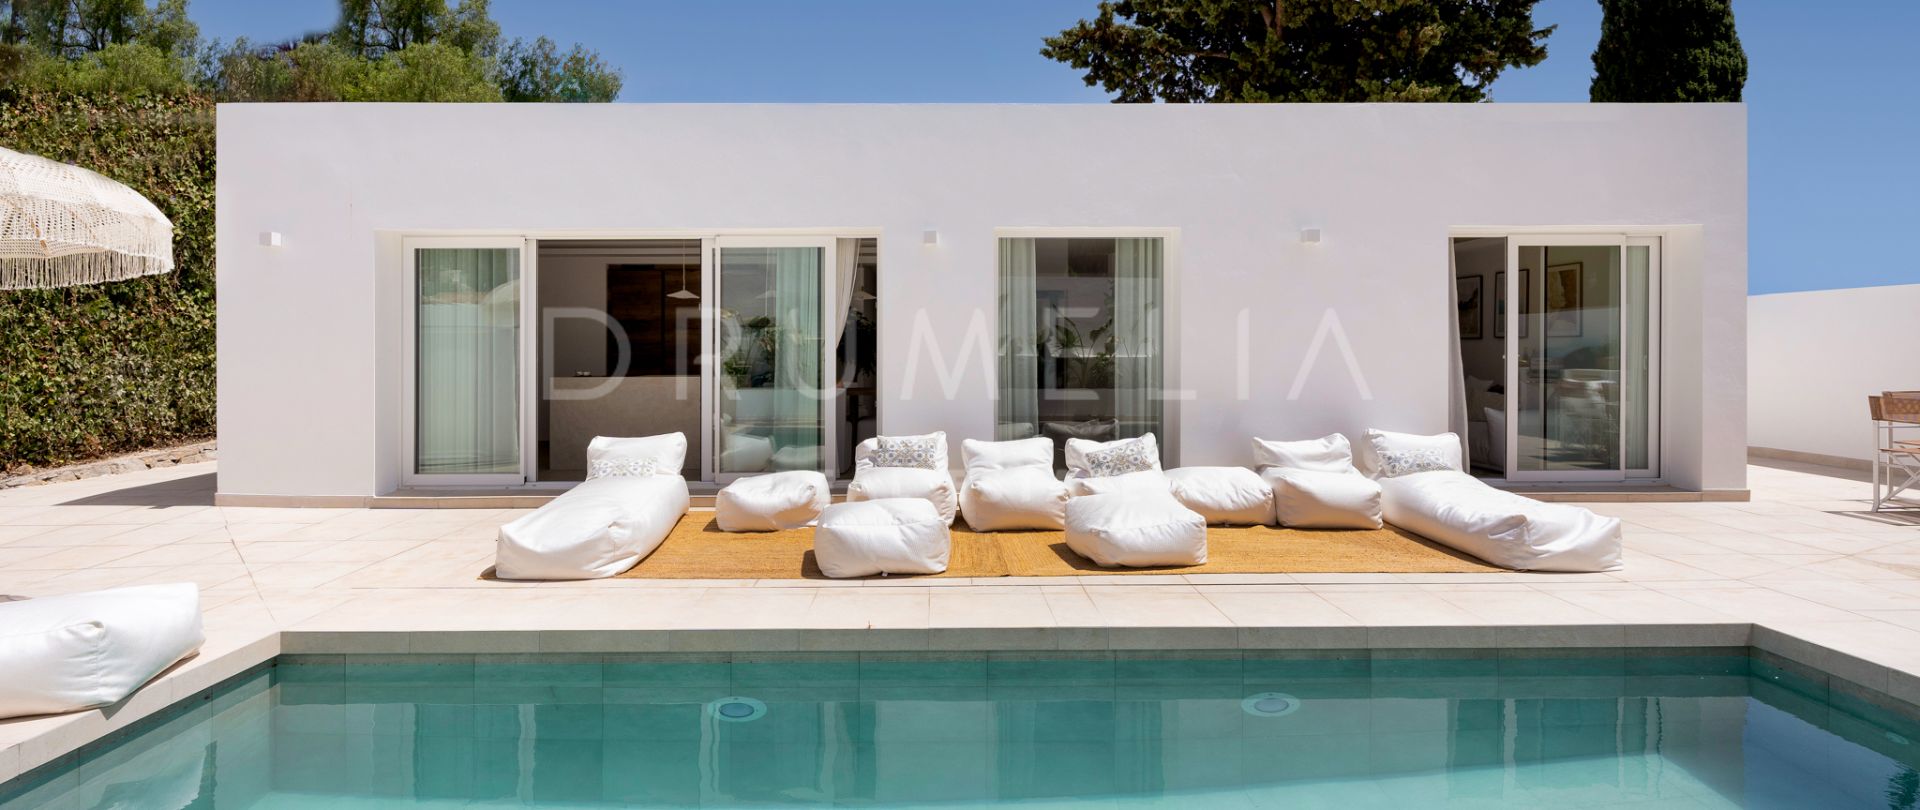 Villa de lujo moderna reformada con elementos boho y scandi en Nueva Andalucia, Marbella